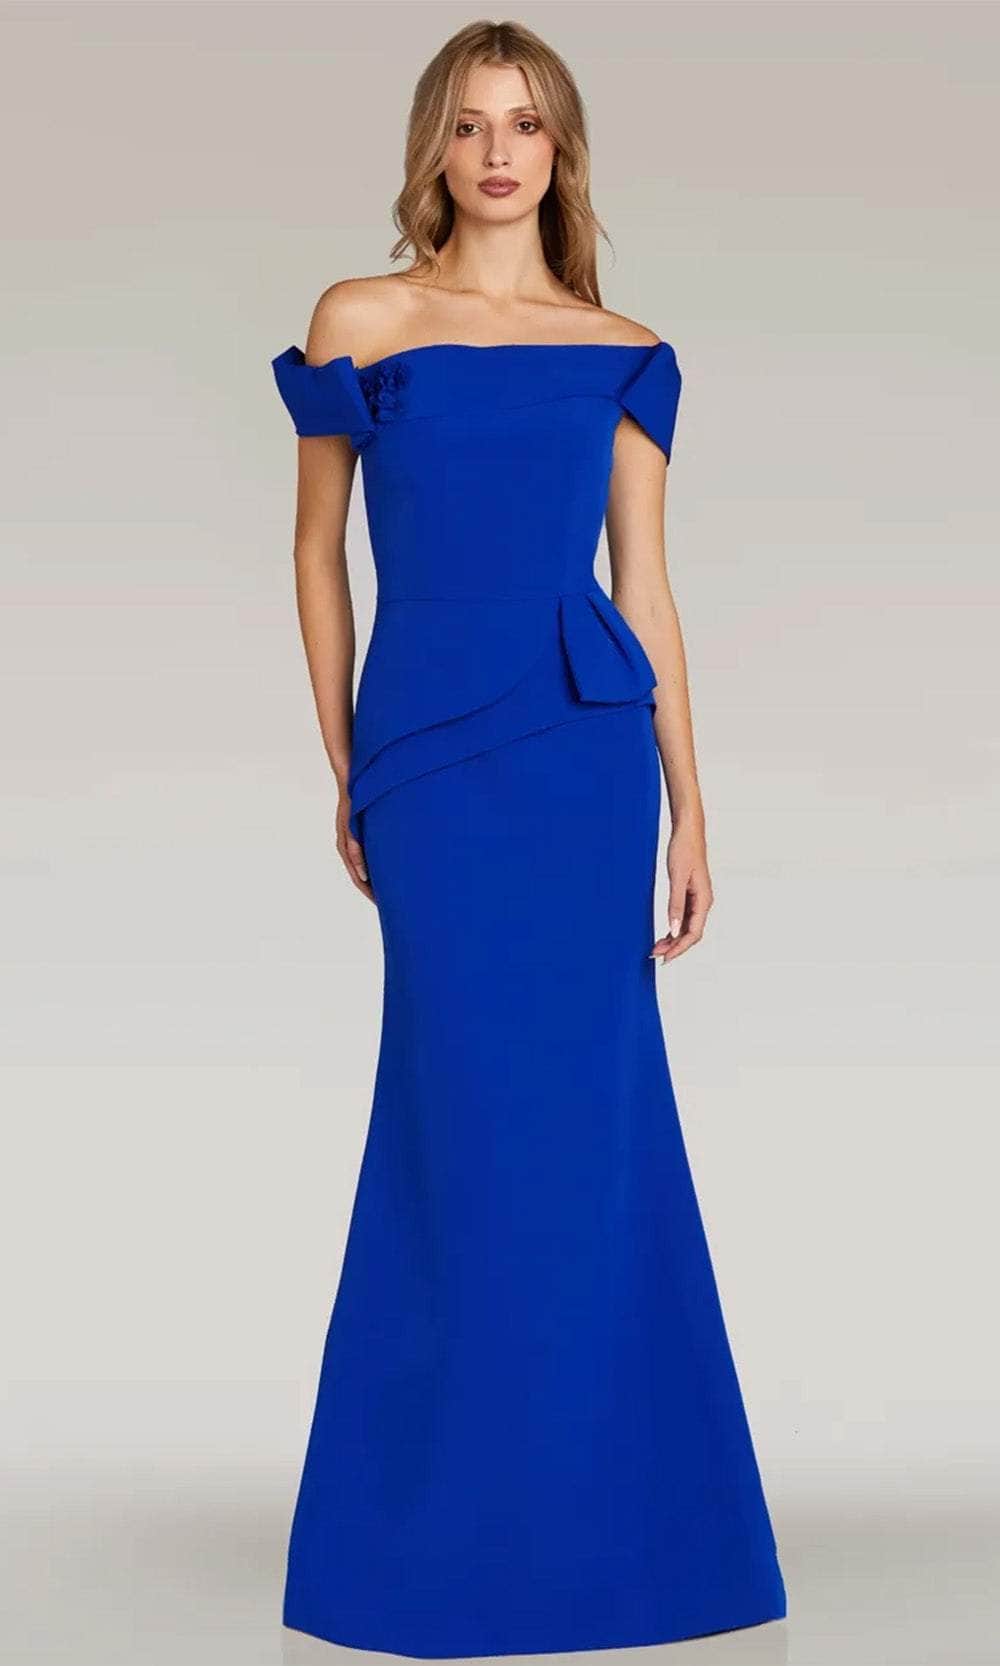 Image of Gia Franco 12306 - Asymmetrical Peplum Evening Dress